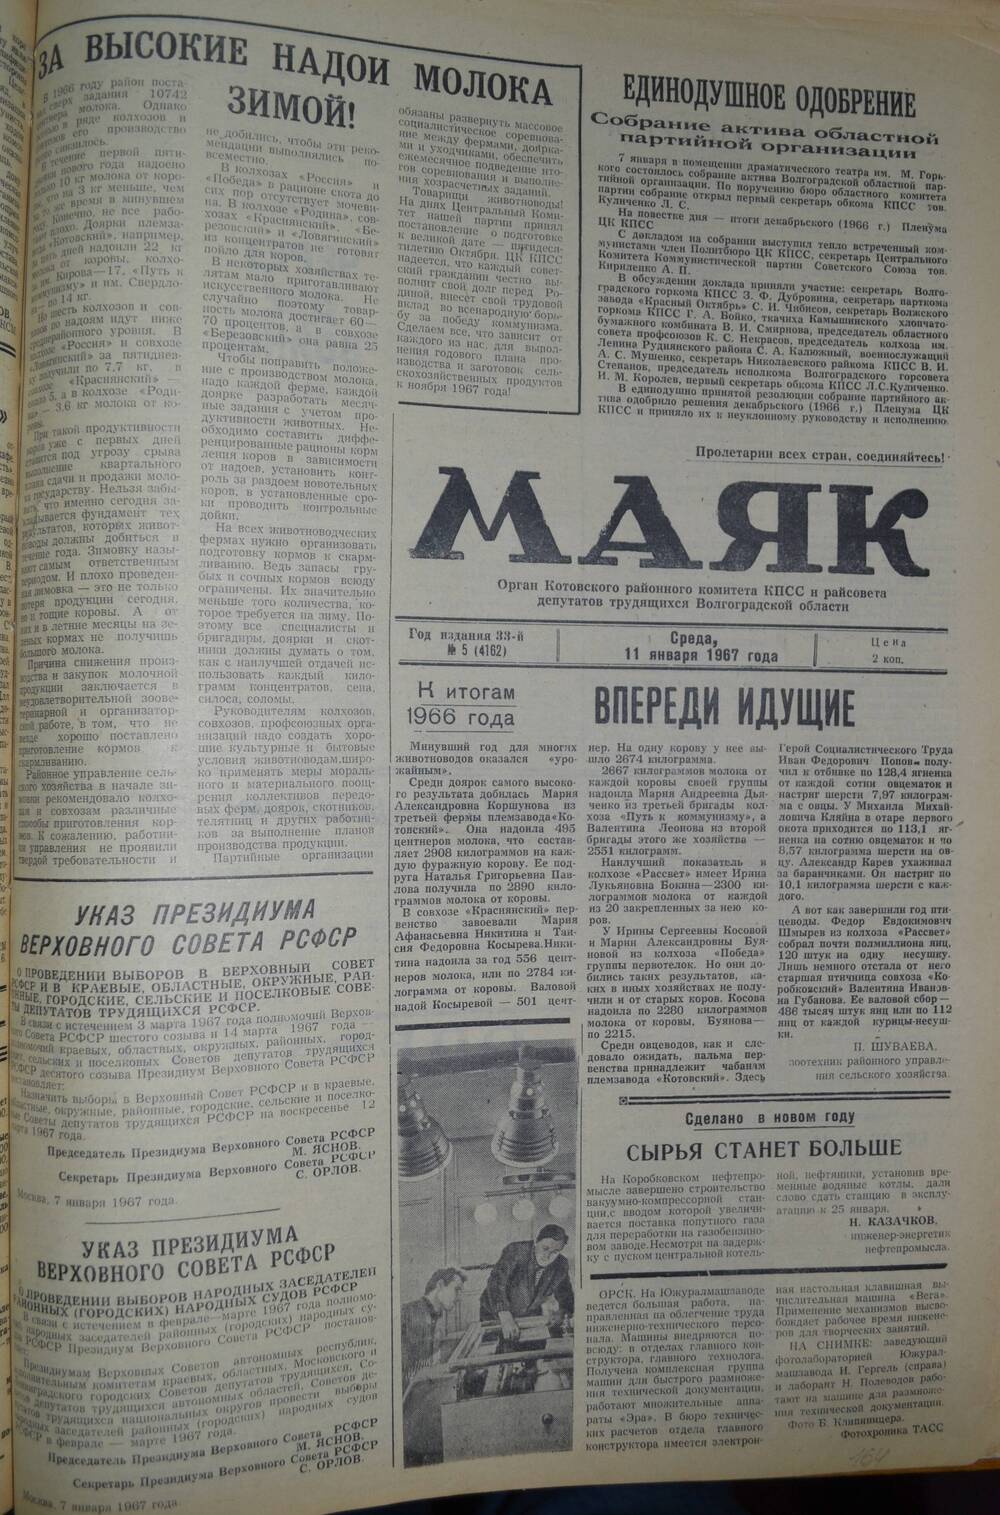 Газета Маяк № 5 (4162). Среда, 11 января 1967 года.